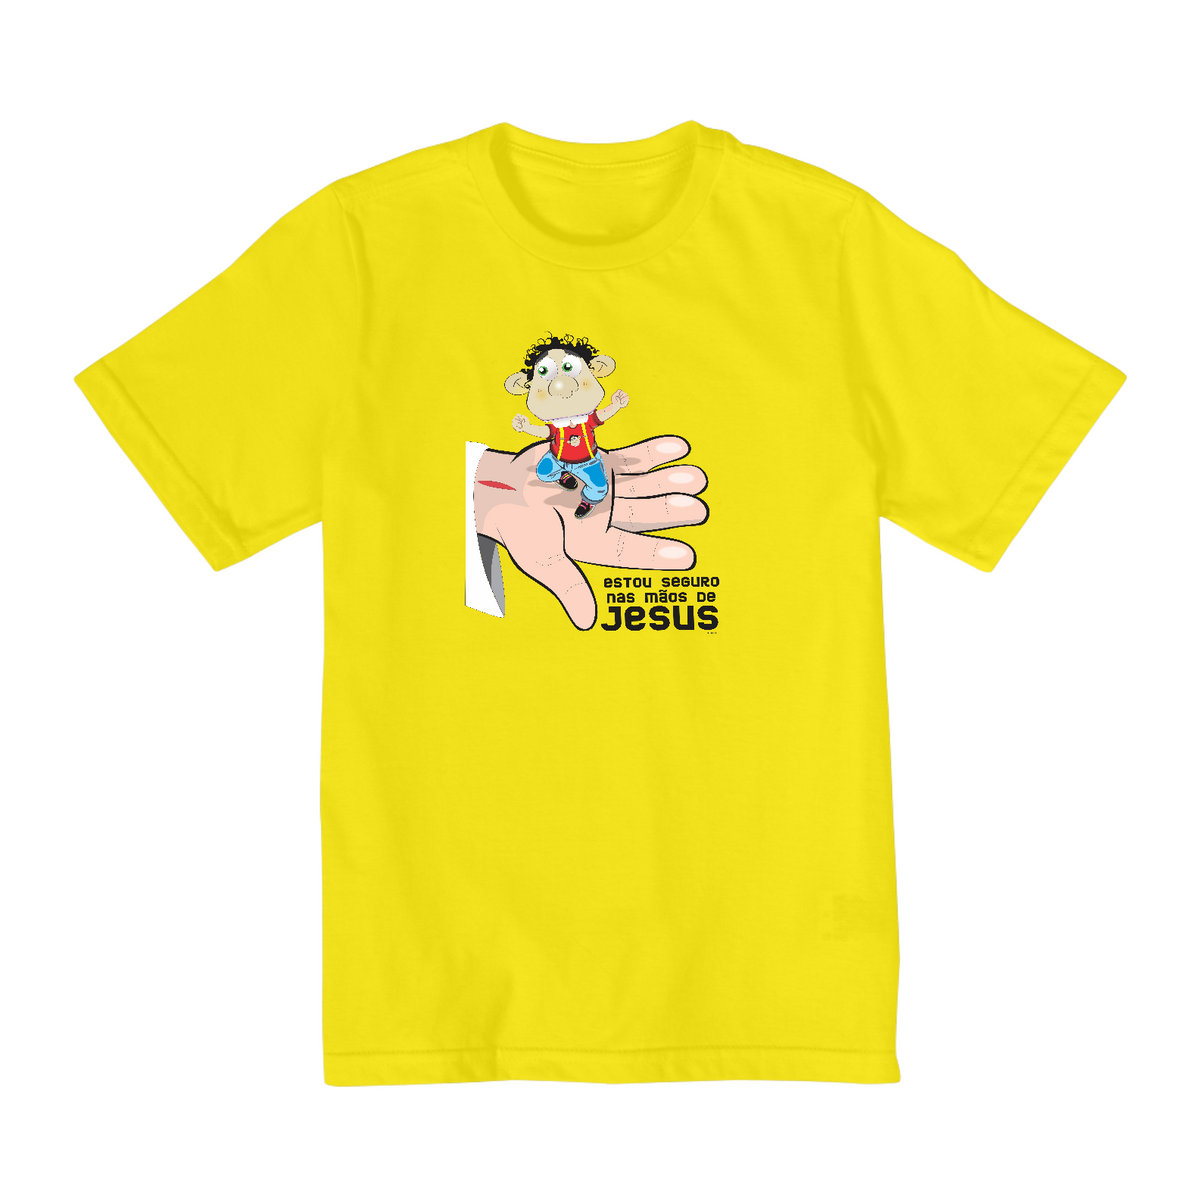 Nome do produto: Camisa Quality Infantil (10 a 14) Ozé Seguro nas mãos de Jesus